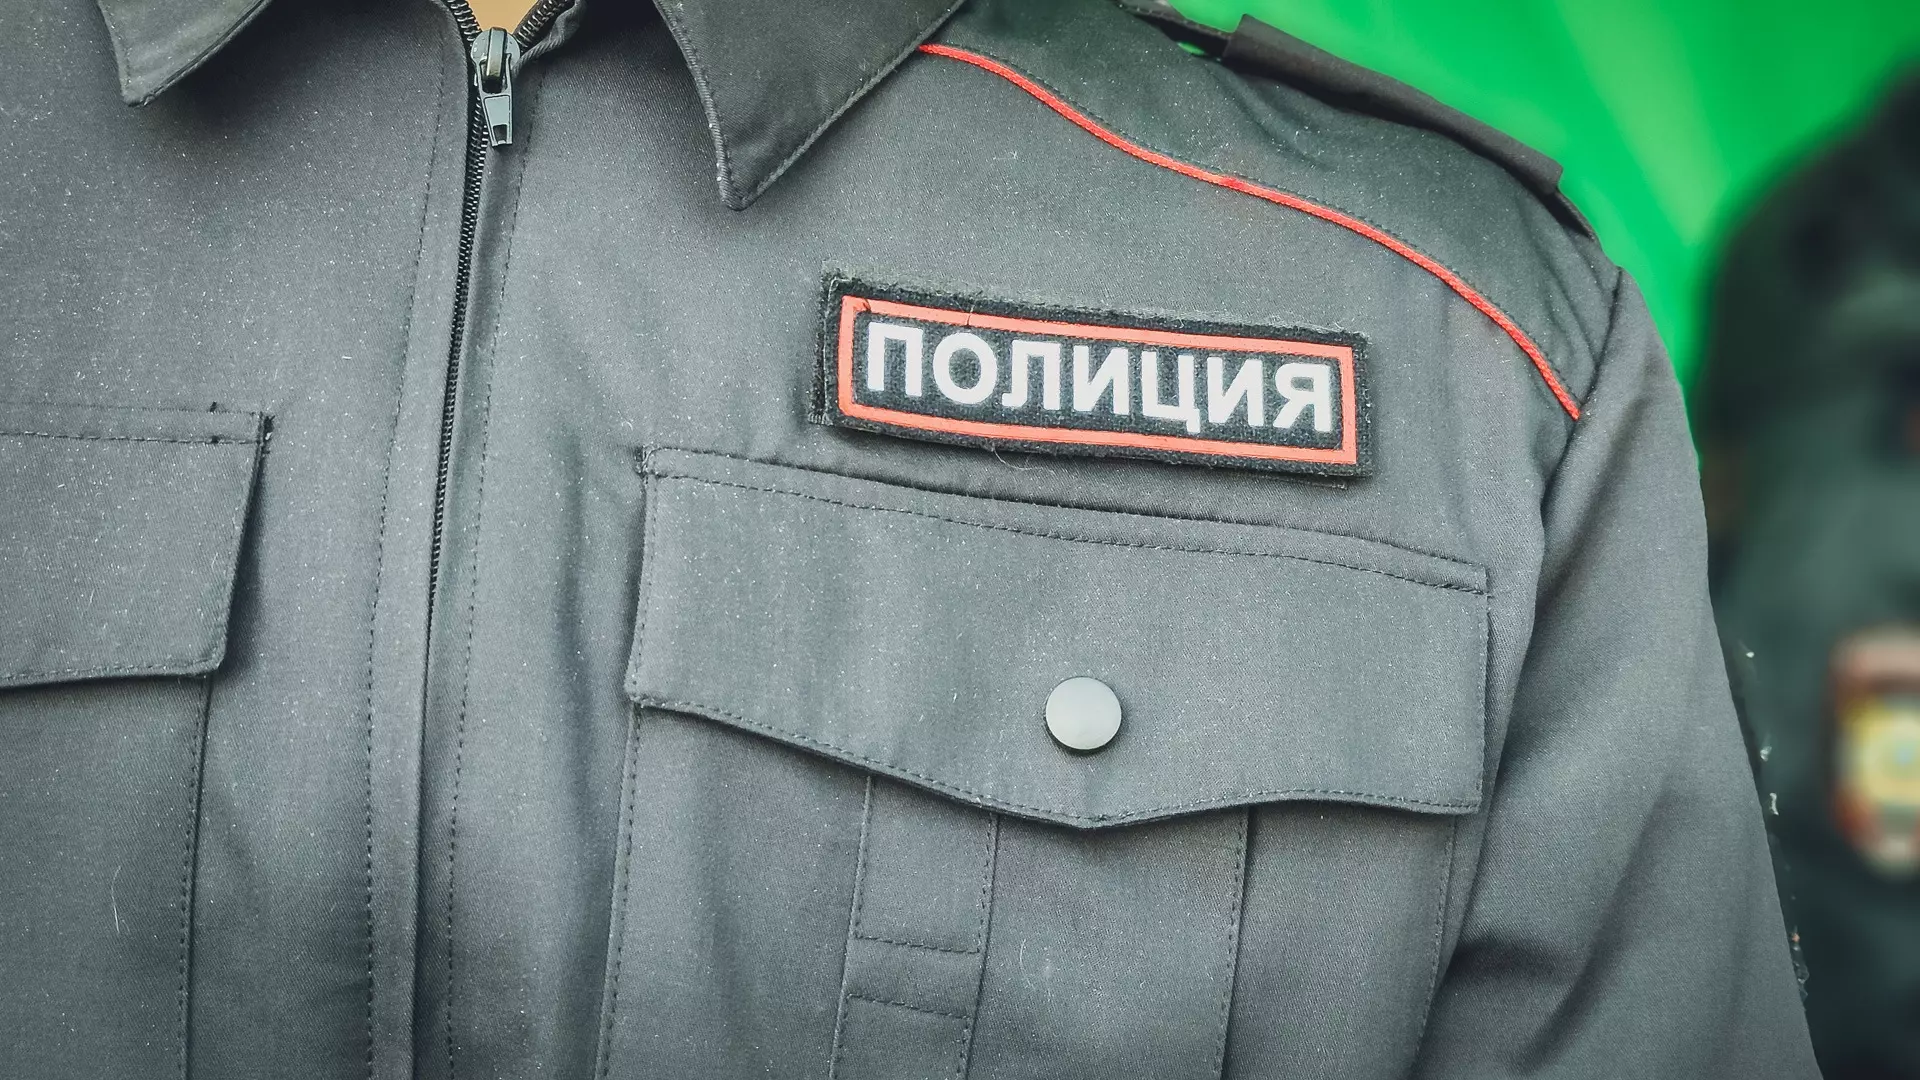 В Ханты-Мансийске полицейский брал взятки от задержанного за покровительство